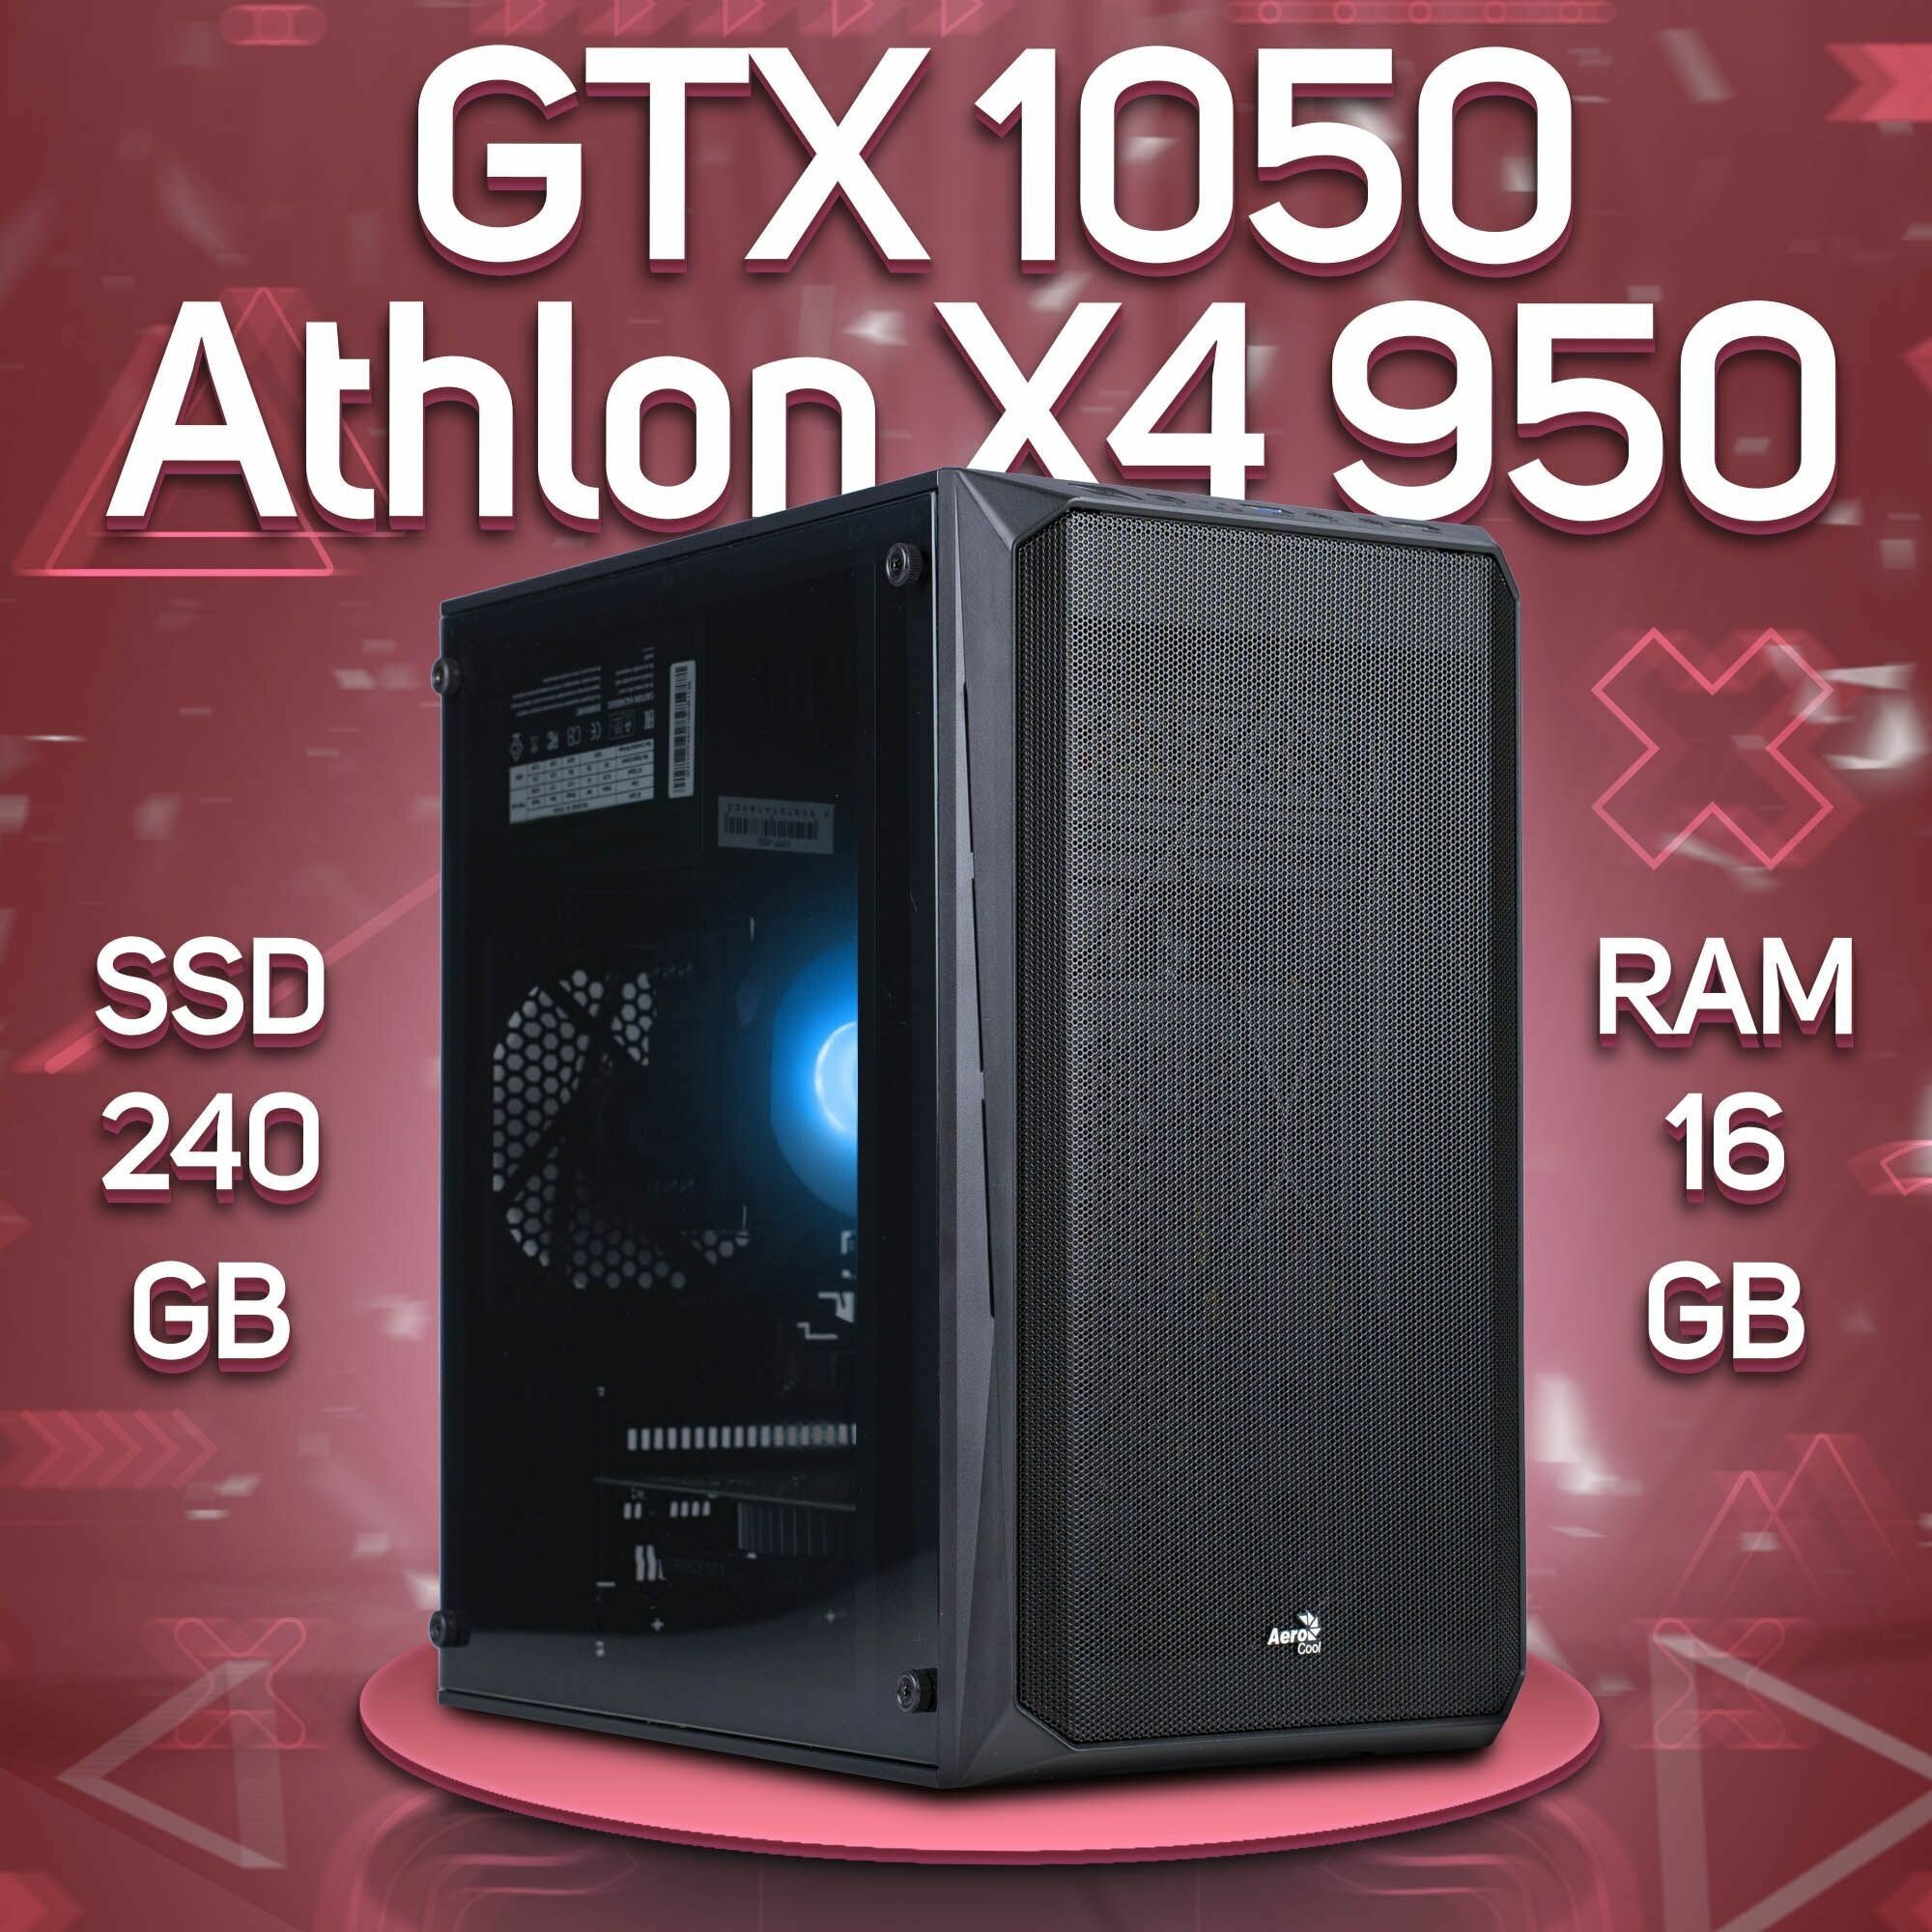 Компьютер AMD Athlon X4 950, NVIDIA GeForce GTX 1050 (2 Гб), DDR4 16gb, SSD 240gb